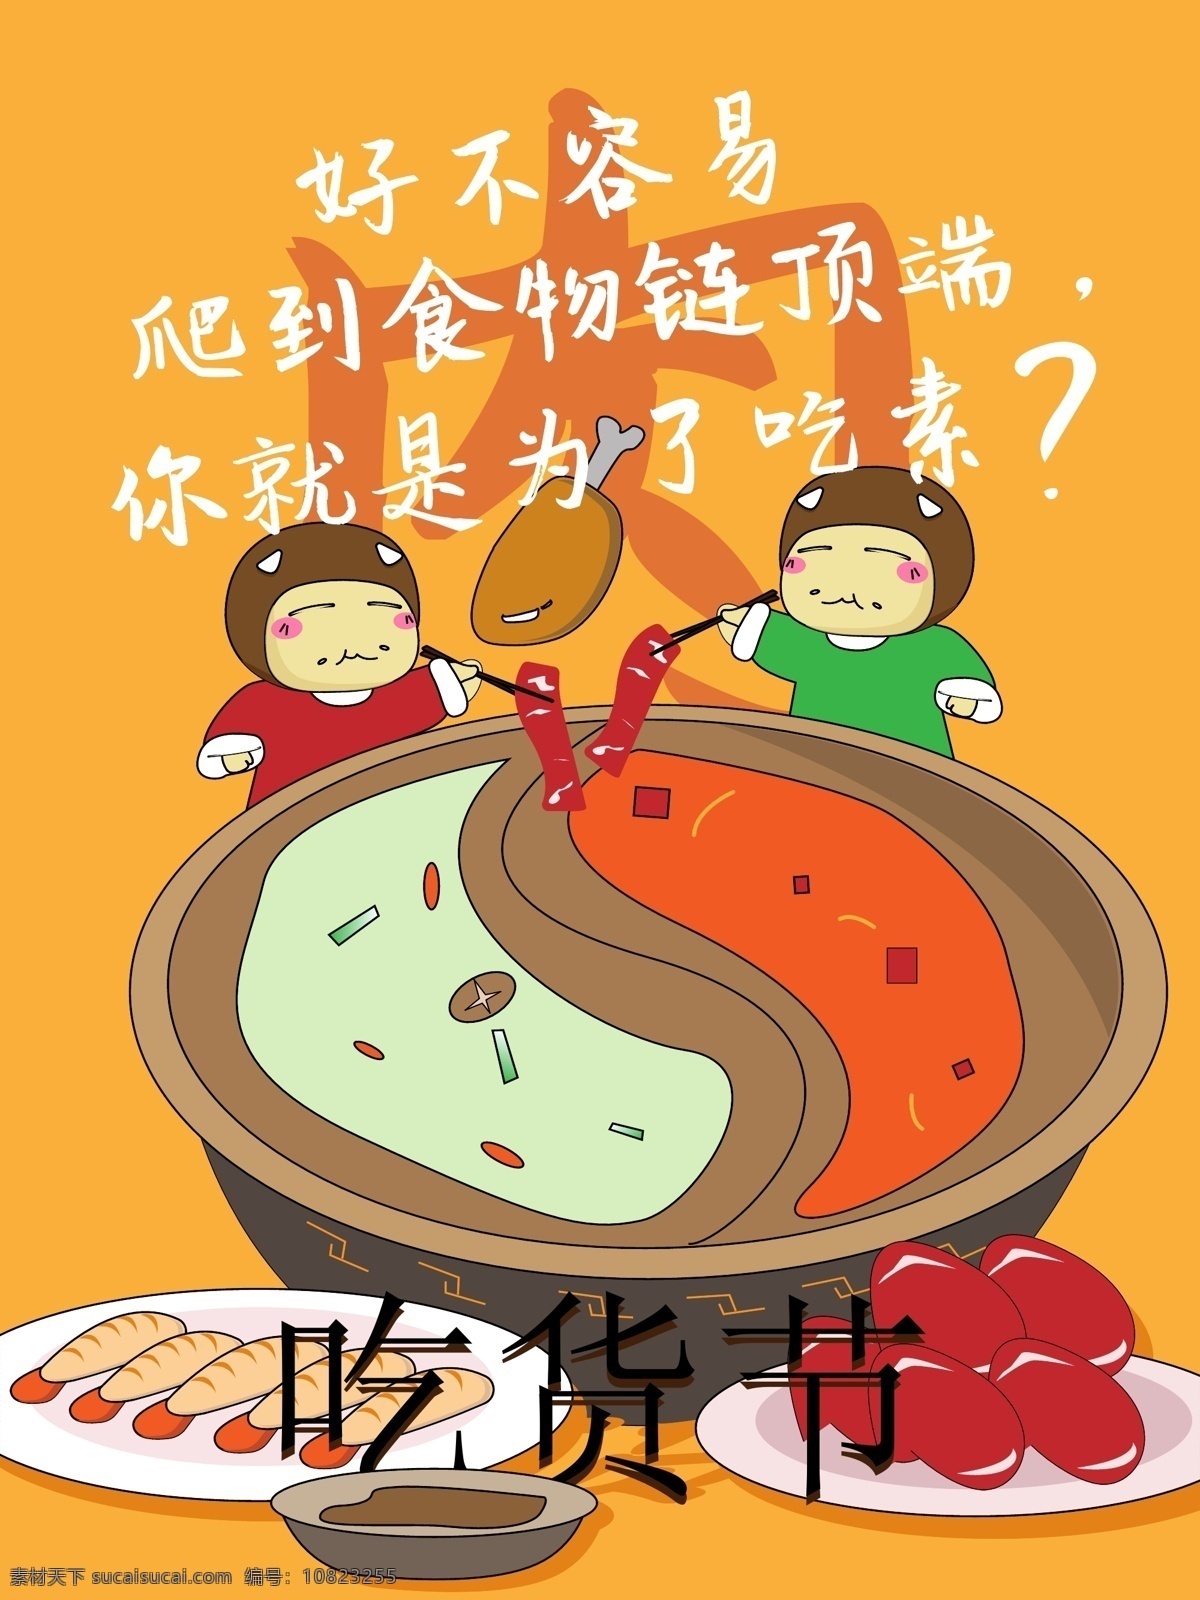 吃货 节 插画 肉类 火锅店 海报 背景 背景模板 吃货节 卡通 美食 矢量 宣传